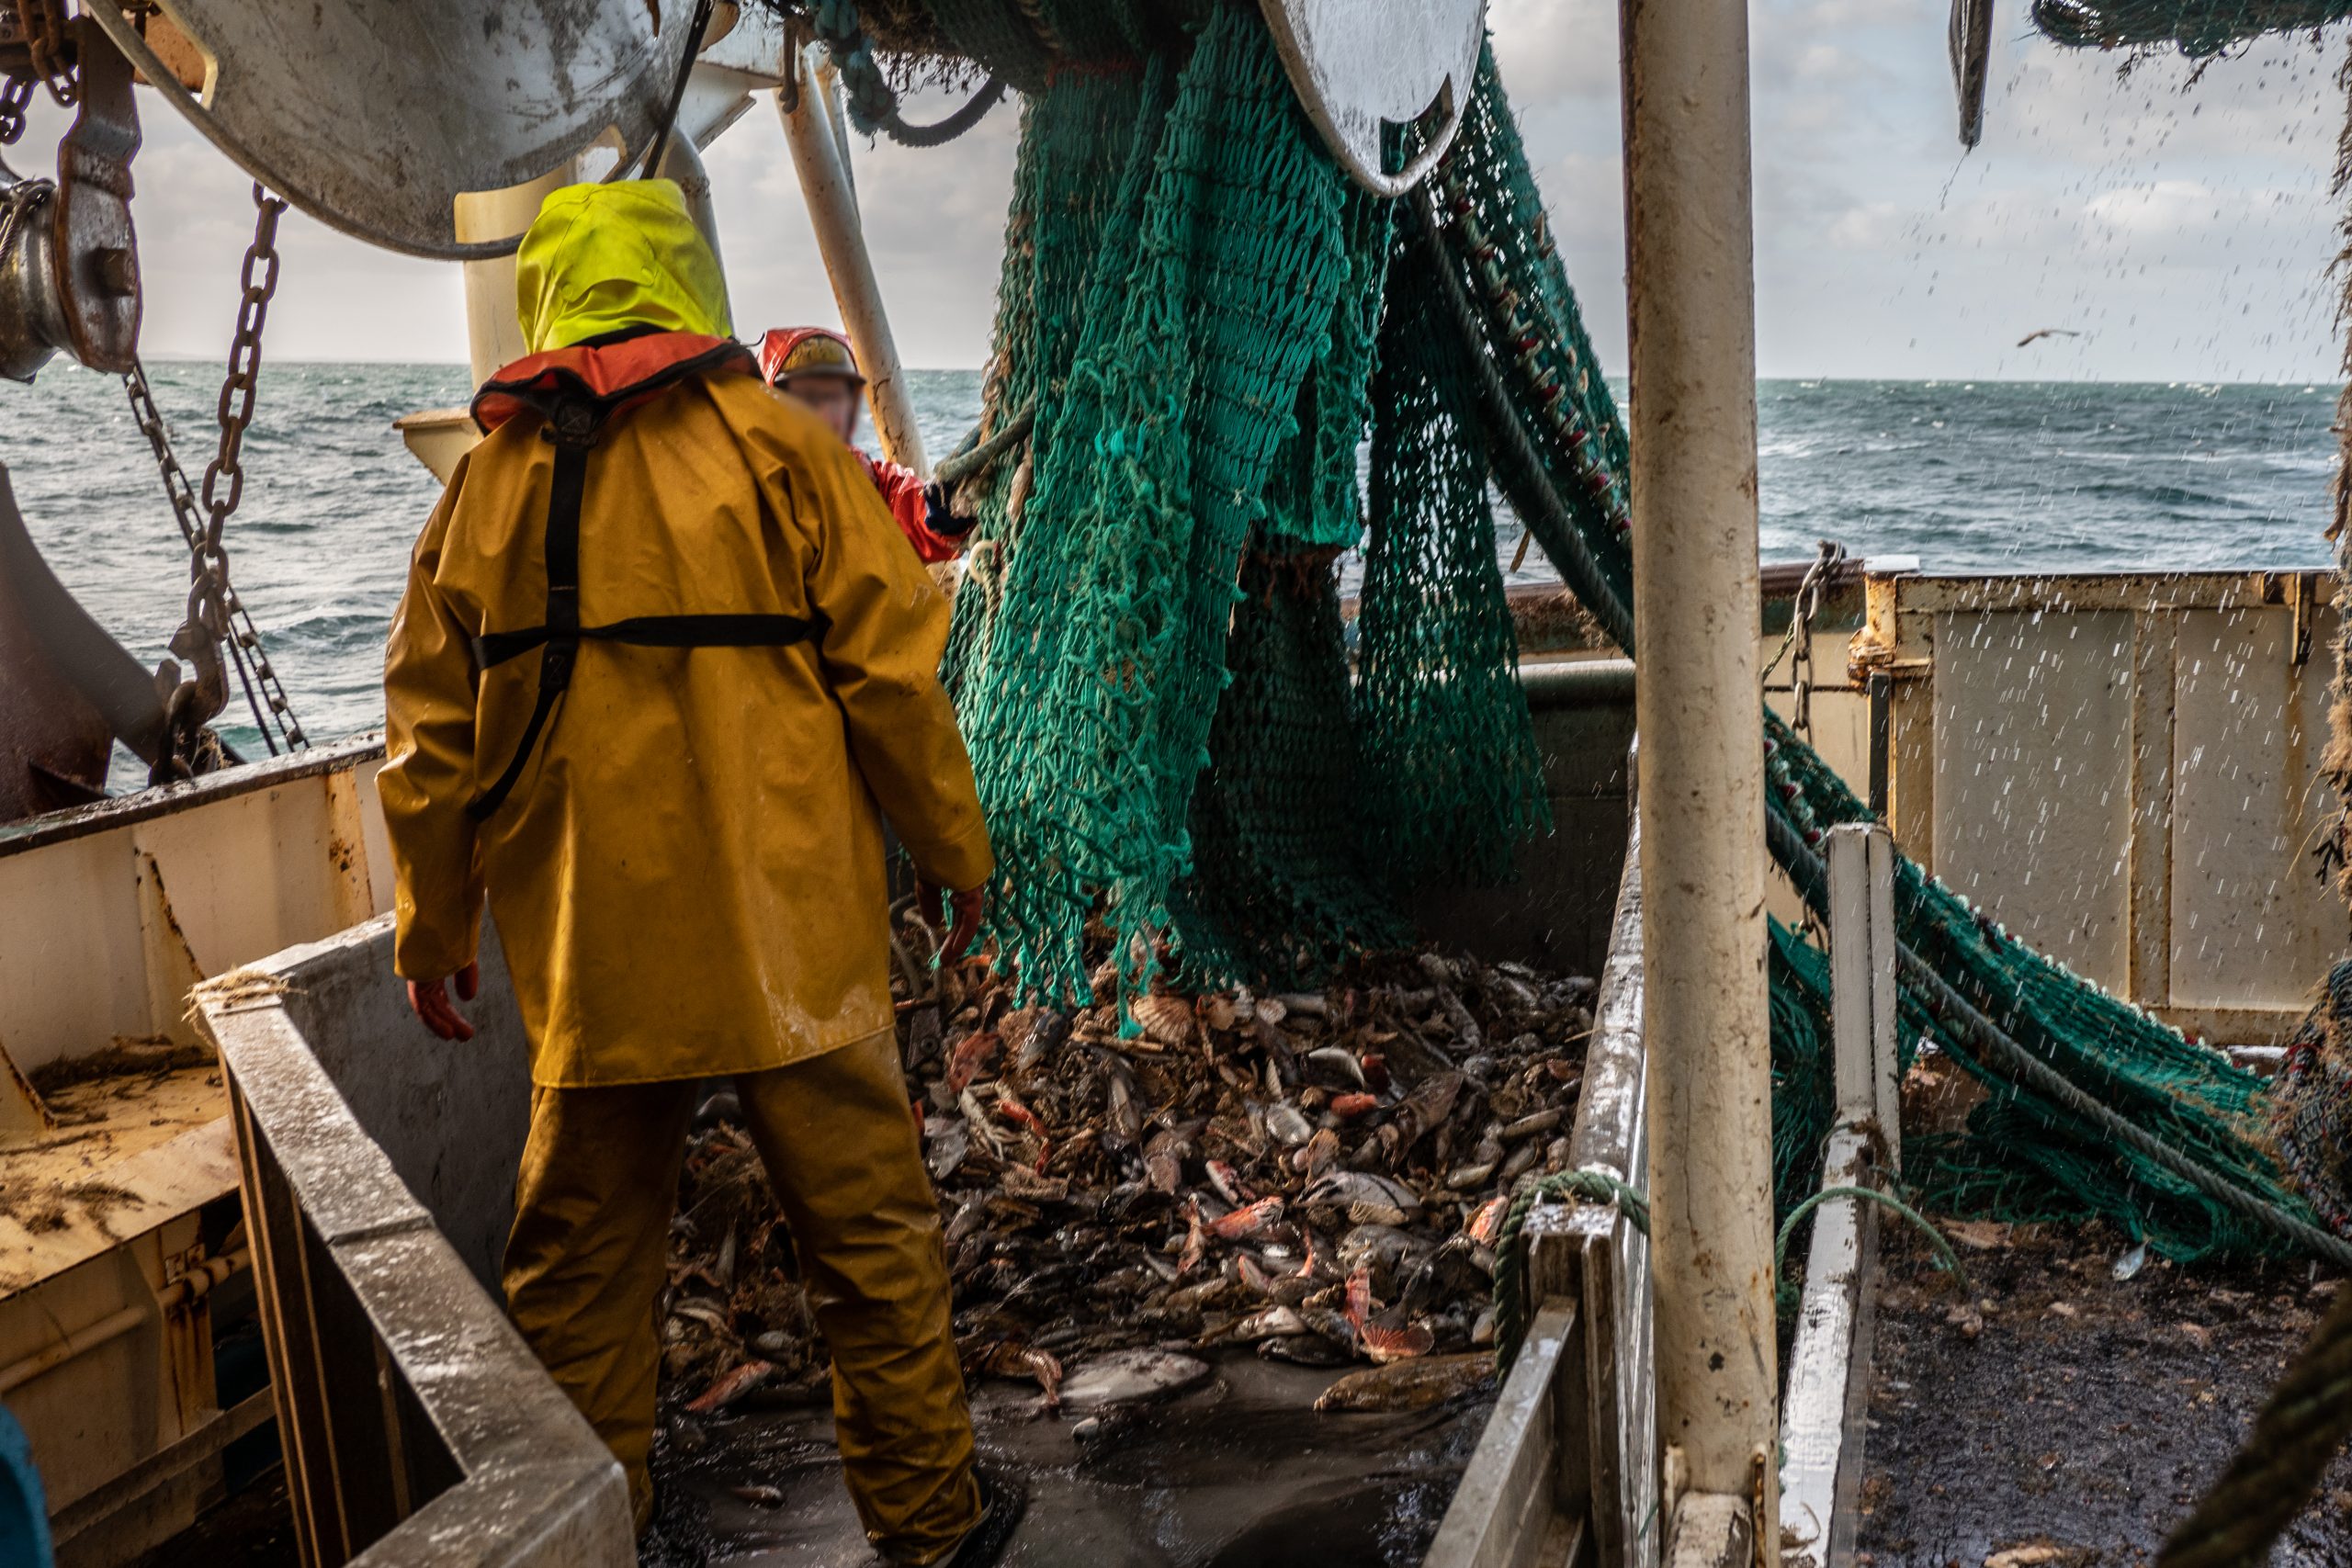 Fischer laden kiloweise Beifang in ein Auffangbecken an Bord ihres Kutters.